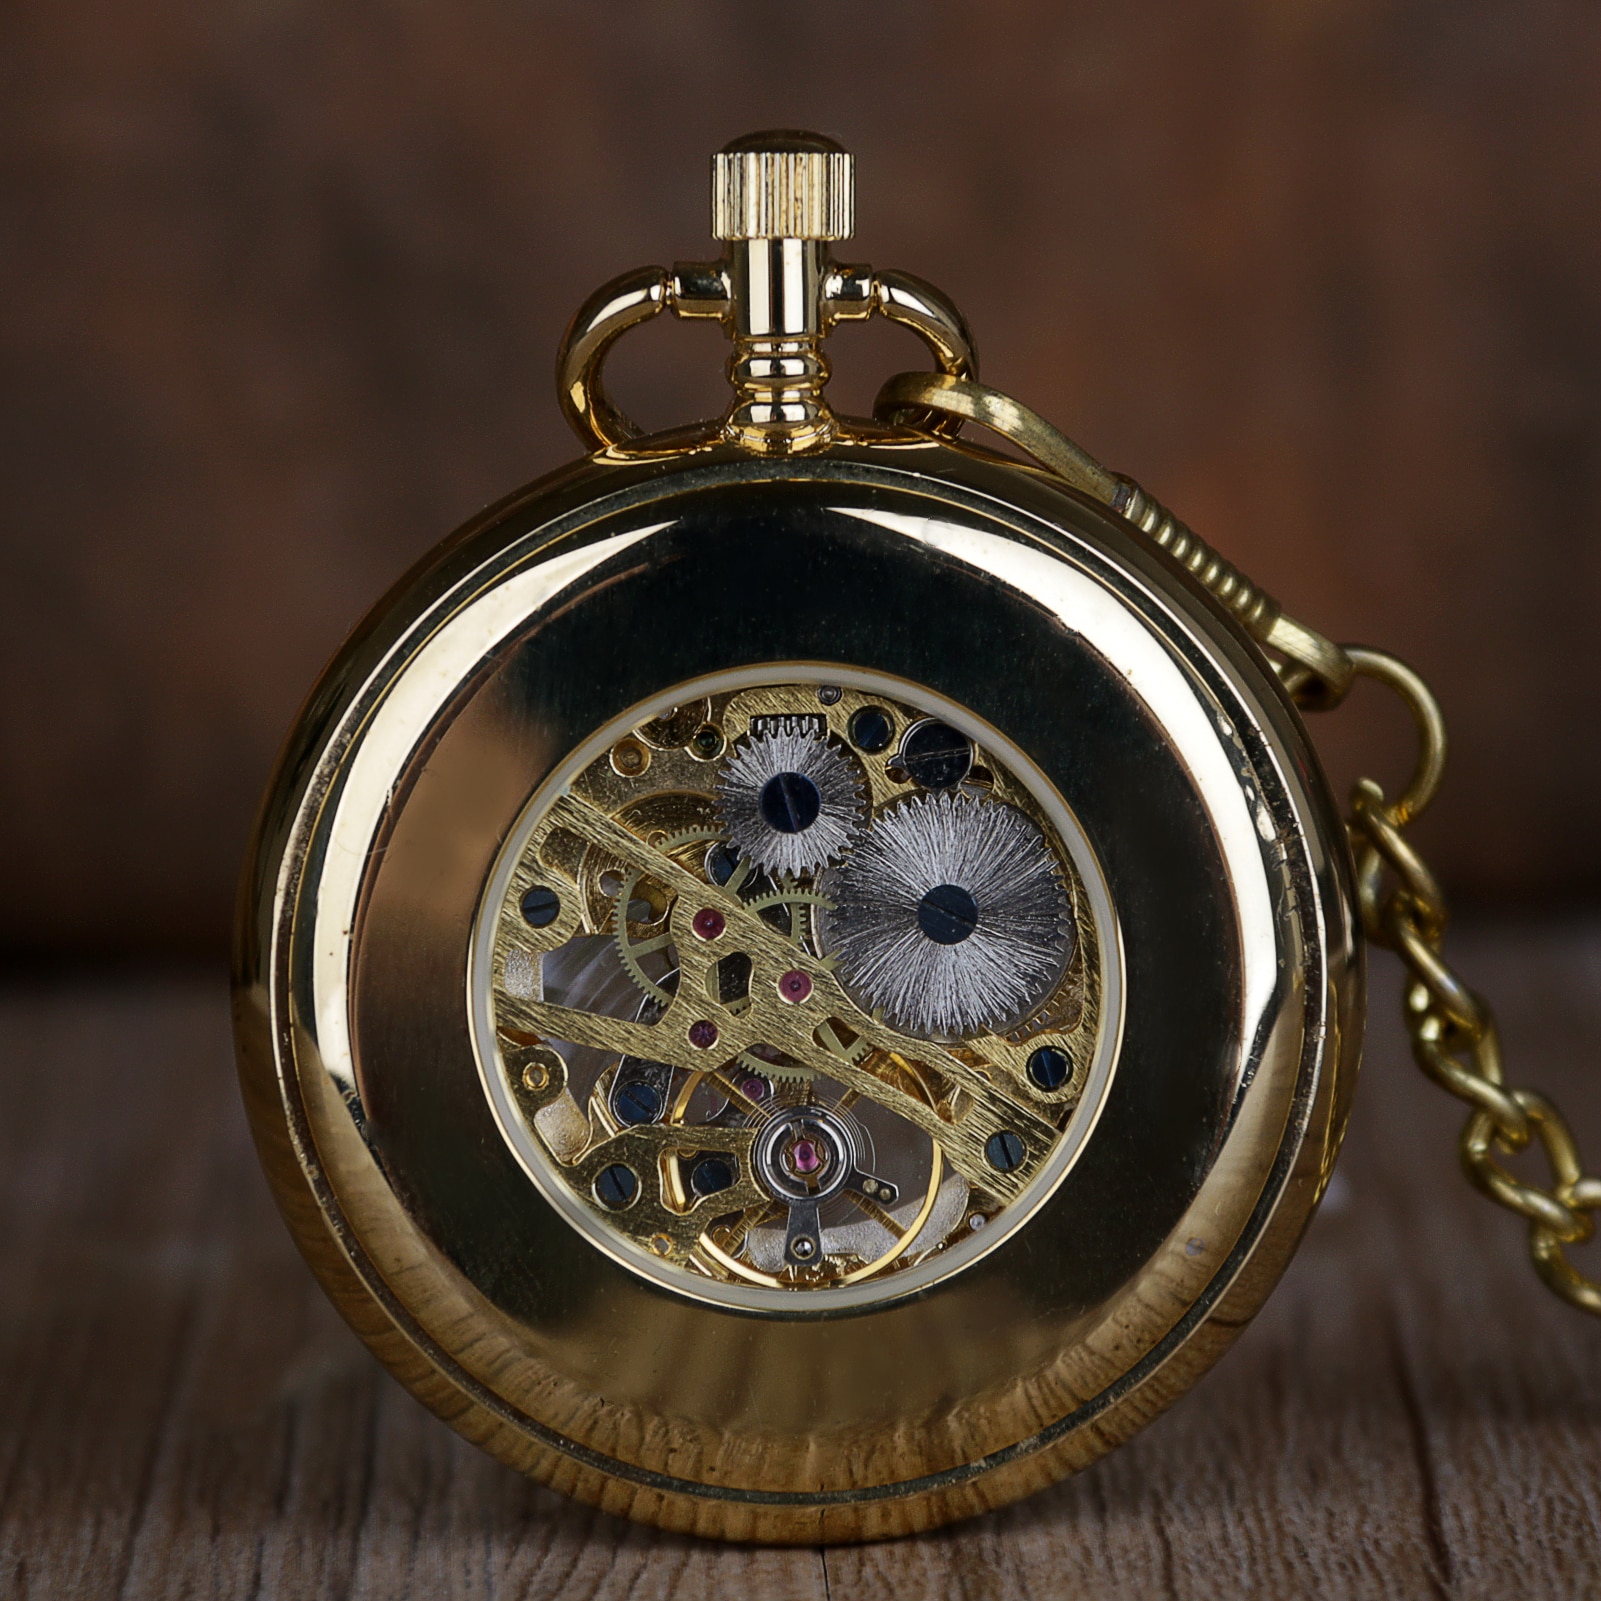 Luksus gyldne mekaniske lommeure guld skelet håndviklet retro mandligt ur med vedhæng kæde